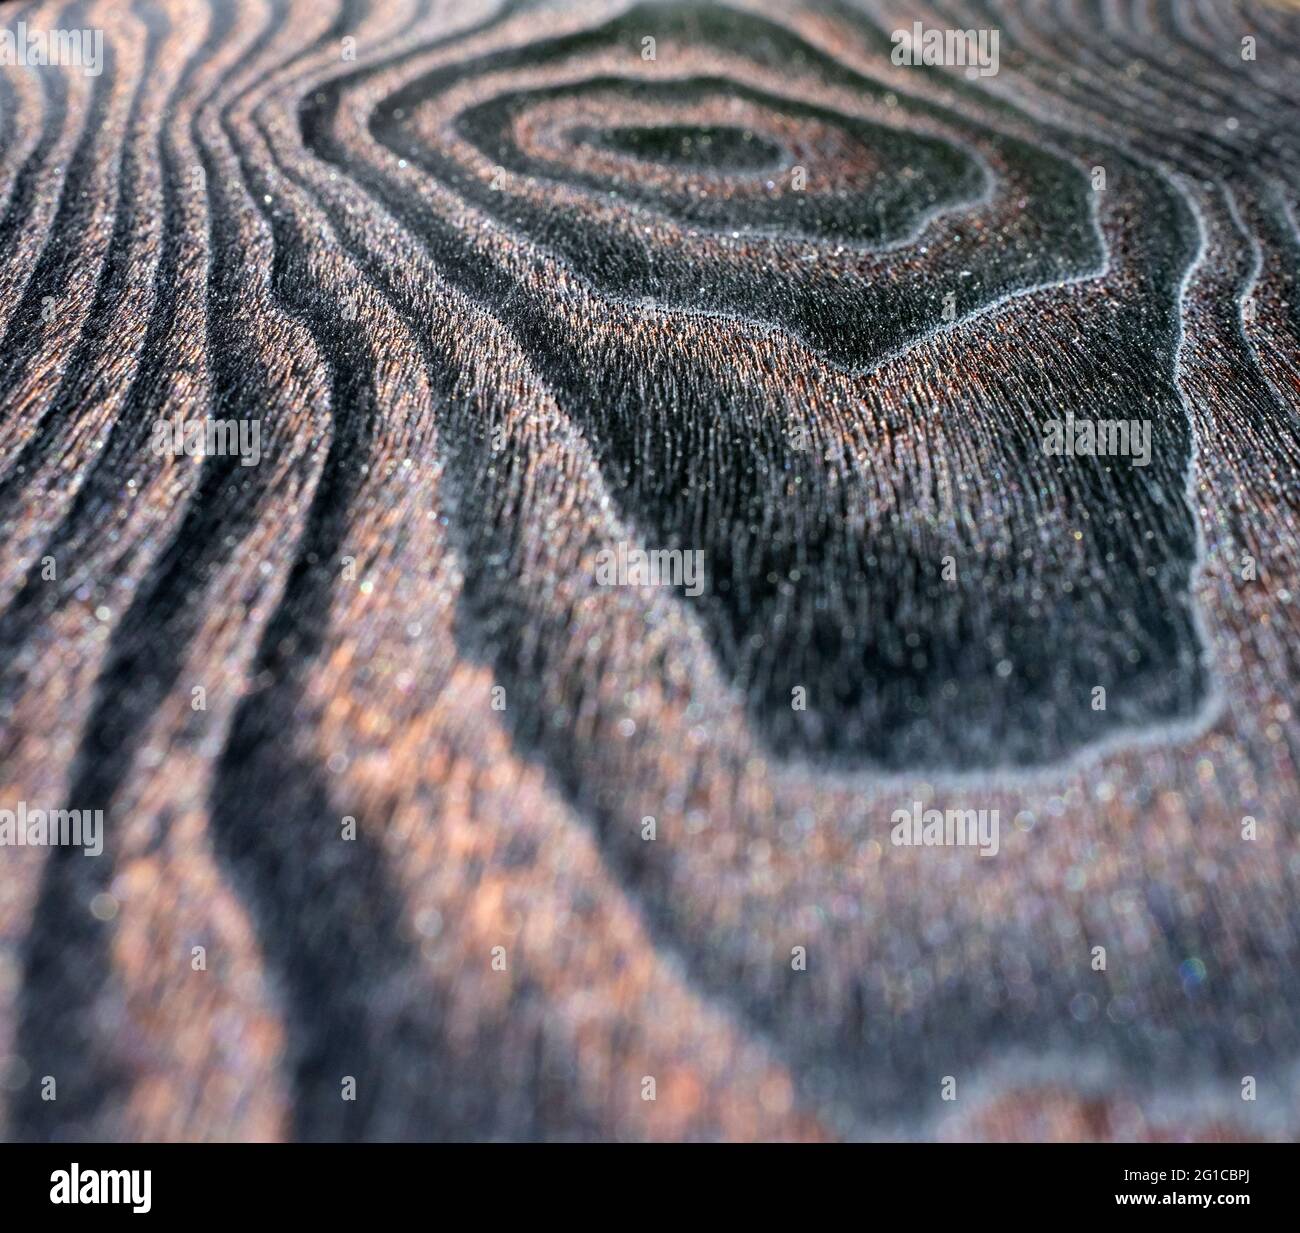 Natürliche Schönheit von verbranntem Holz, polierte tiefschwarze Holzplatte in extremer Nahaufnahme Stockfoto